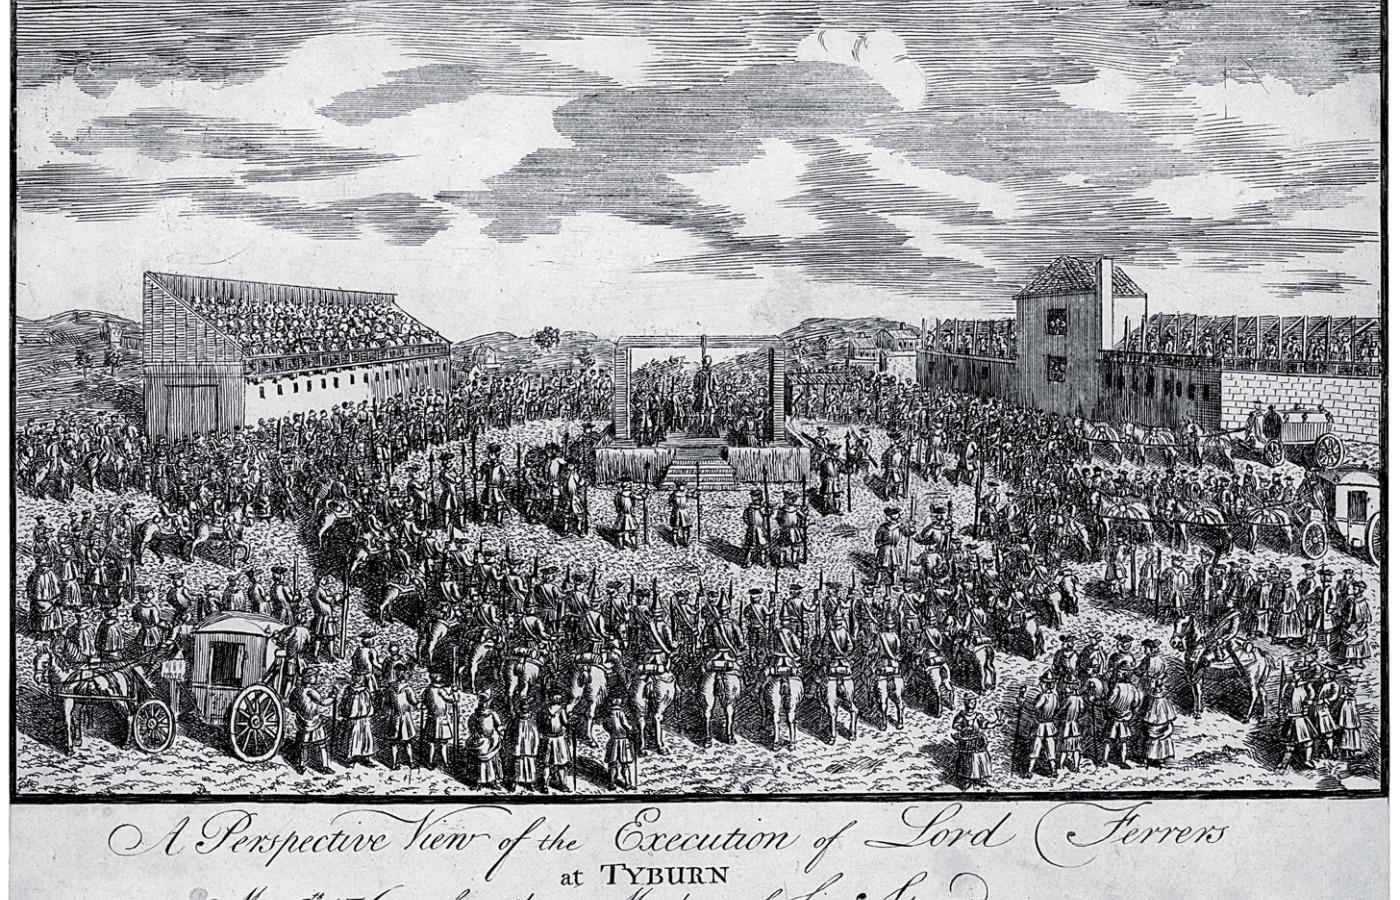 Spektakl egzekucyjny w Tyburn, ilustracja z 1760 r.